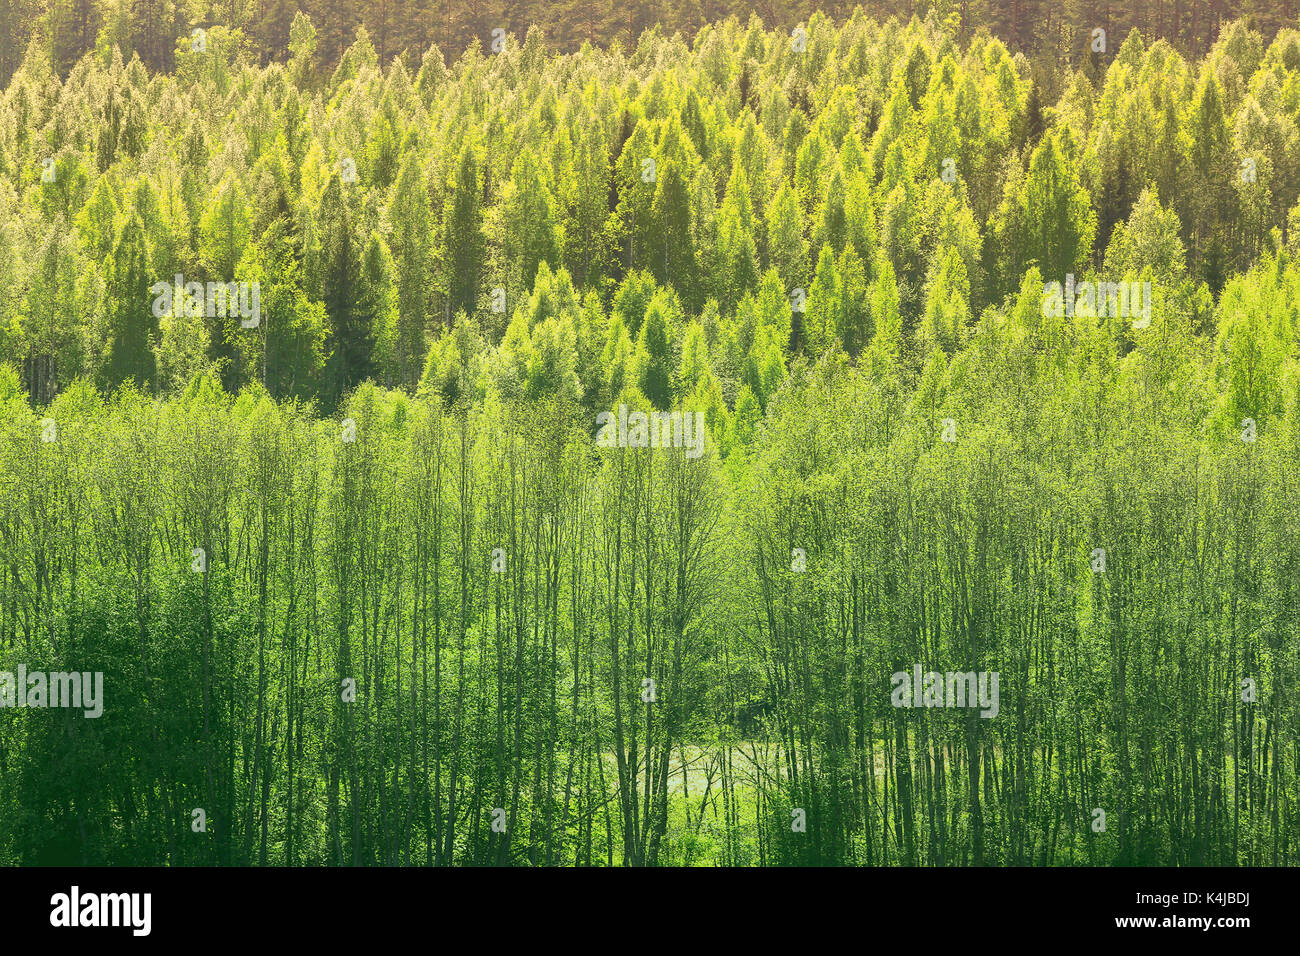 Hintergrund mit schönen grünen Frühling Wald aus Birken und Espen Bäume im Sonnenlicht. Stockfoto